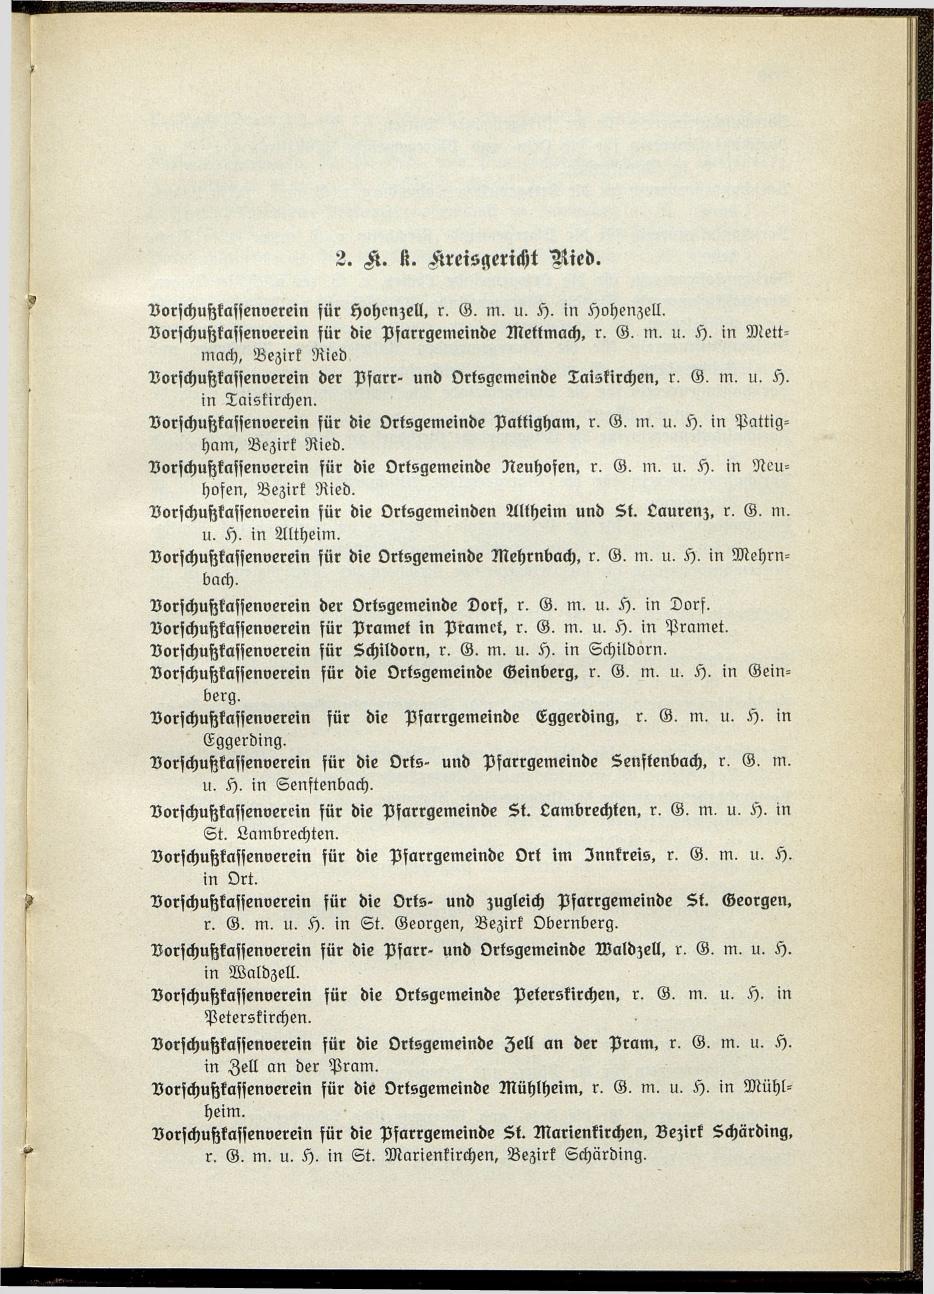 Verzeichnis der handelsgerichtlich protokollierten Firmen sowie der registrierten Erwerbs- und Wirtschafts-Genossenschaften in Oberösterreich 1914 - Page 103